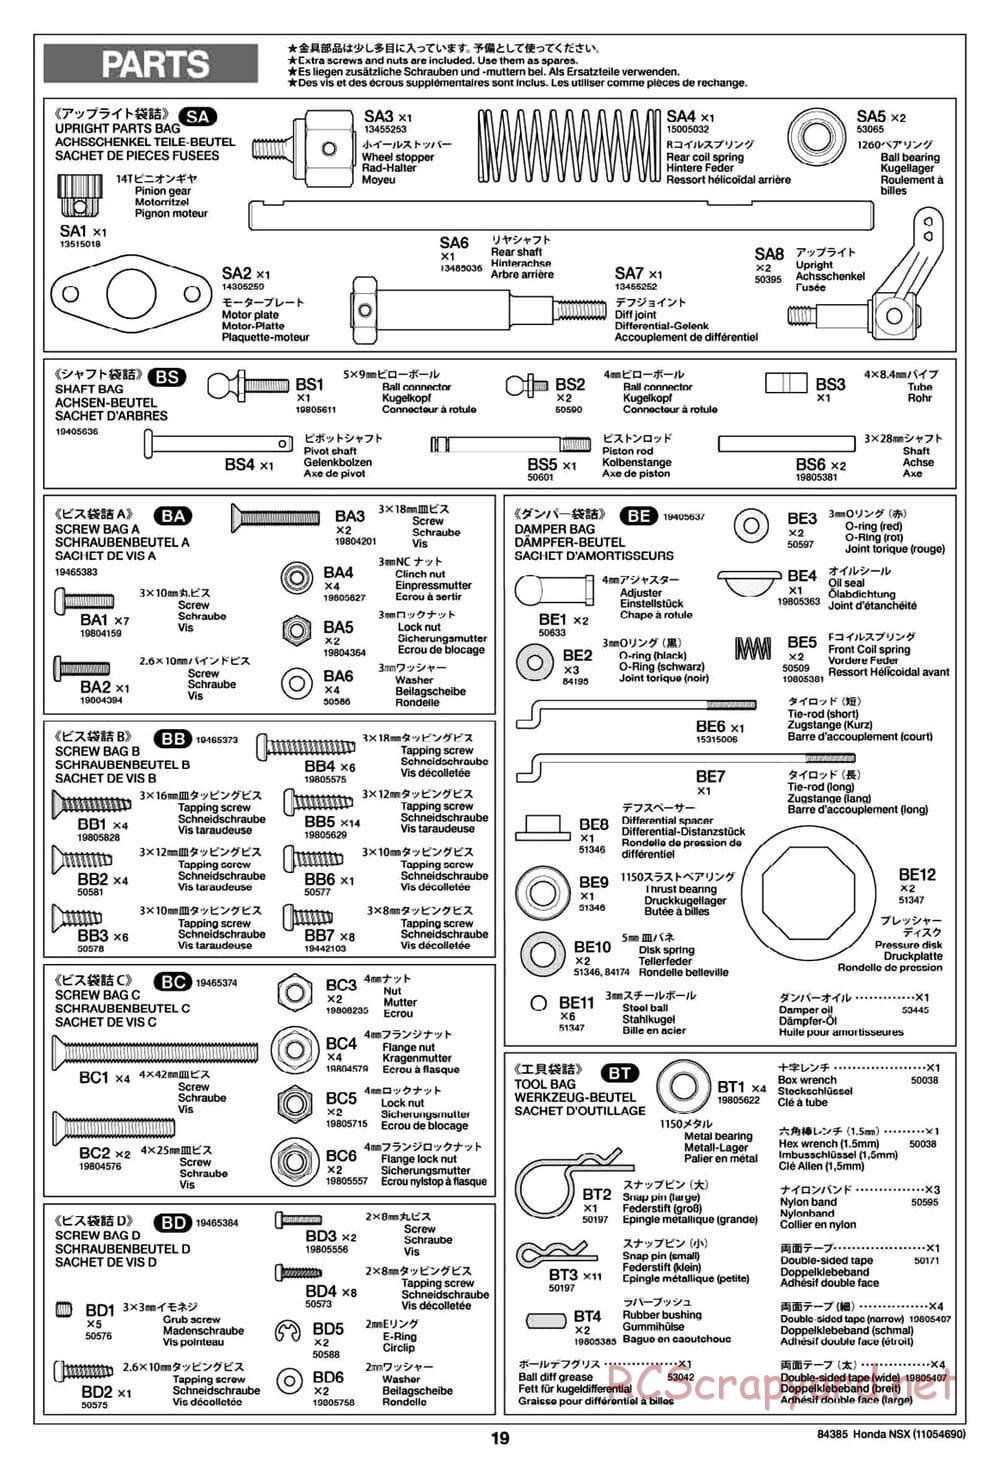 Tamiya - Honda NSX - Group-C Chassis - Manual - Page 19